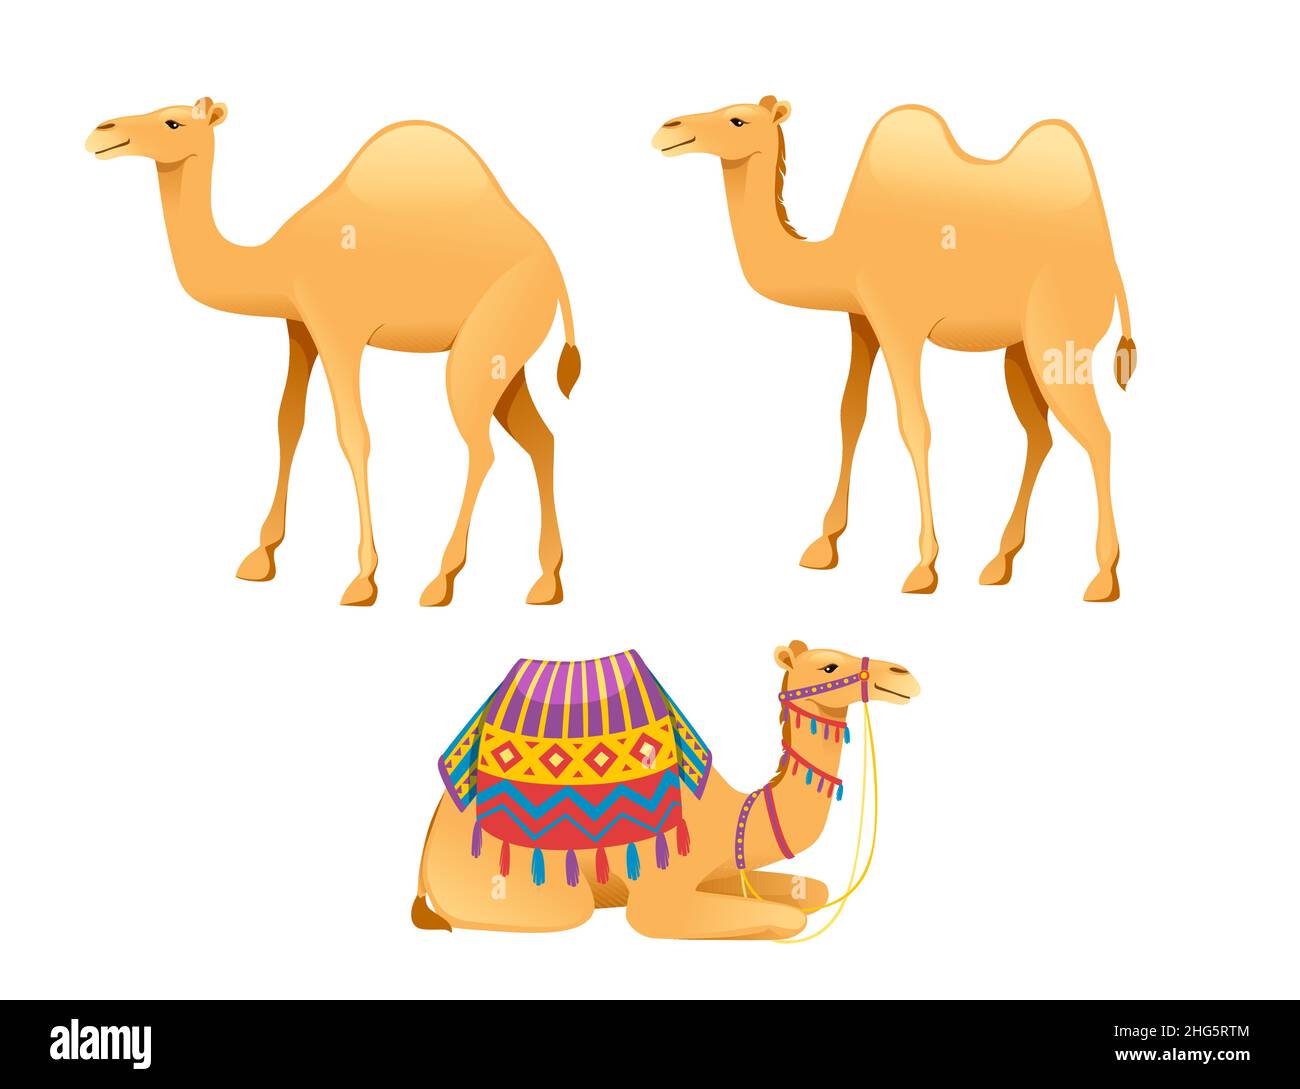 Ensemble de mignon un dos de chameau avec bride et selle dessin animé animal dessin illustration vectorielle plate isolée sur fond blanc Illustration de Vecteur